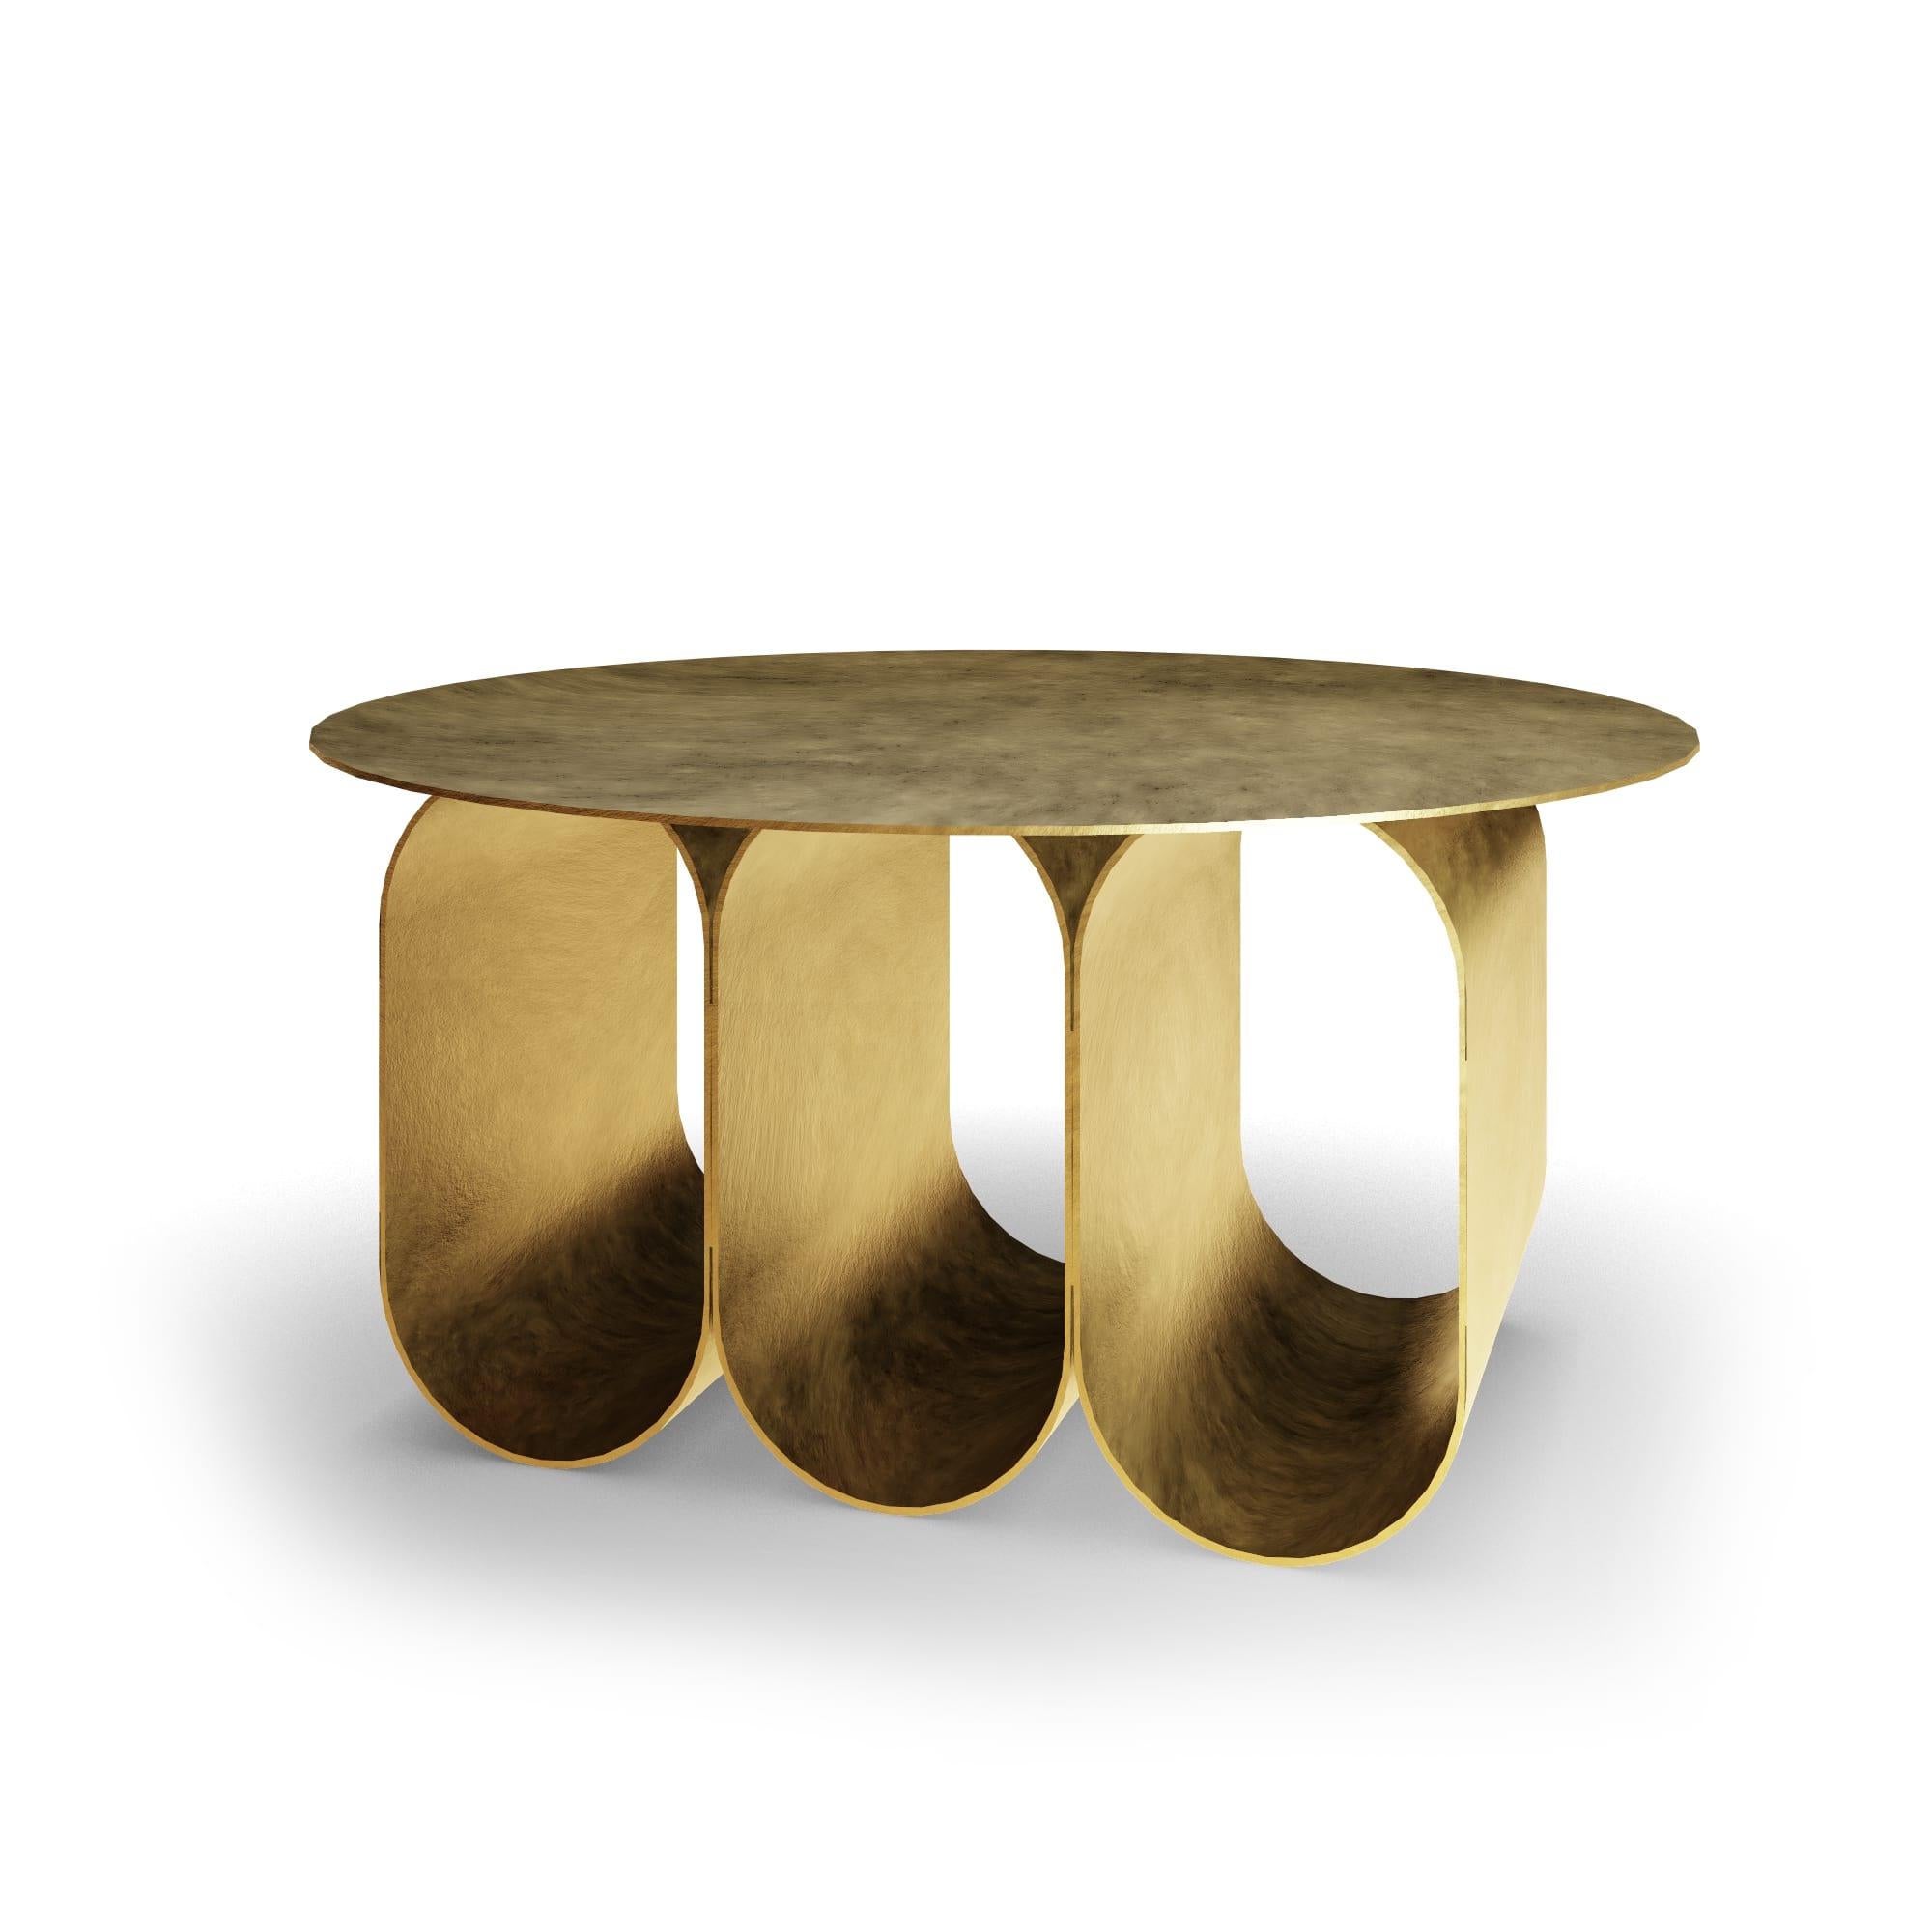 Der Arcade Couchtisch - 3 Bögen runde Version - gold, wurde von Kasadamo in Zusammenarbeit mit Pierre Tassin, französischer Designer, entworfen. Dieser Tisch spiegelt eine Mischung aus alter und futuristischer Architektur wider. Seine Identität